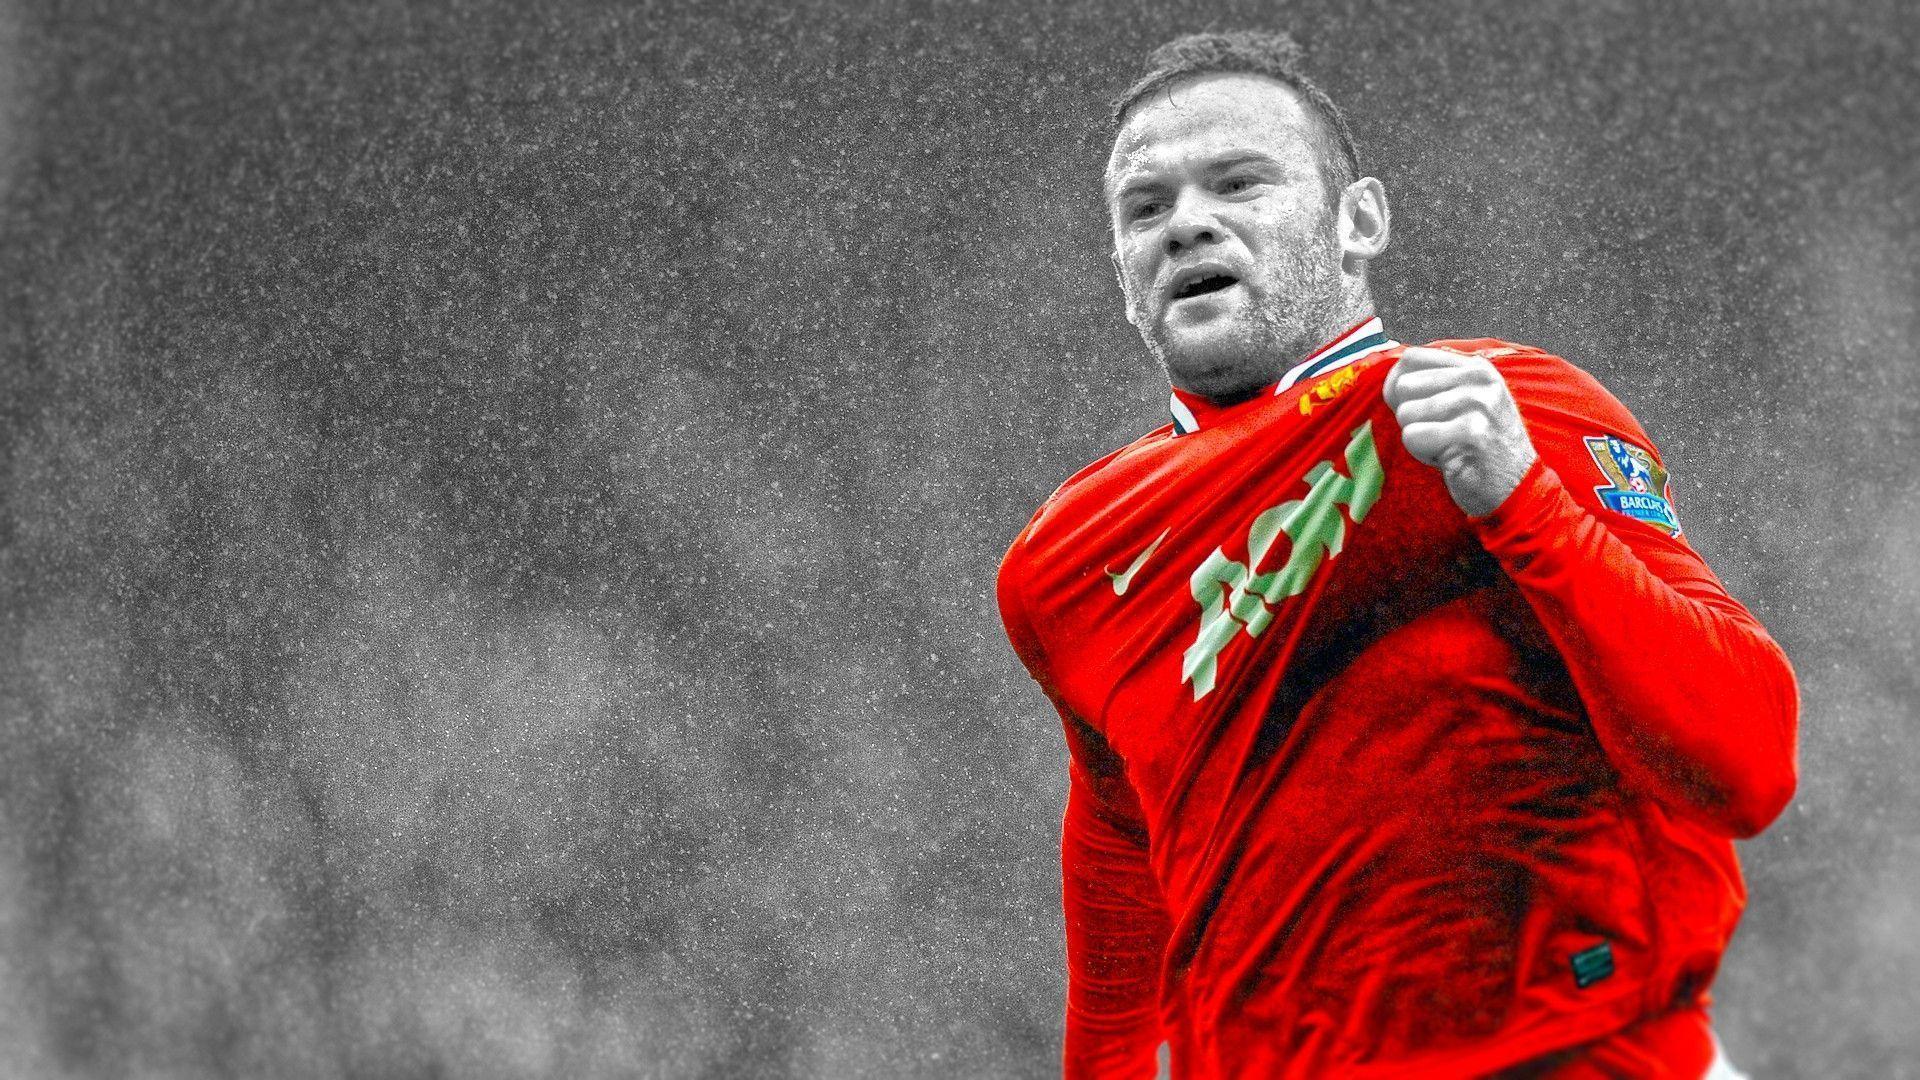 Rooney Desktop Wallpaper. Wayne Rooney Image